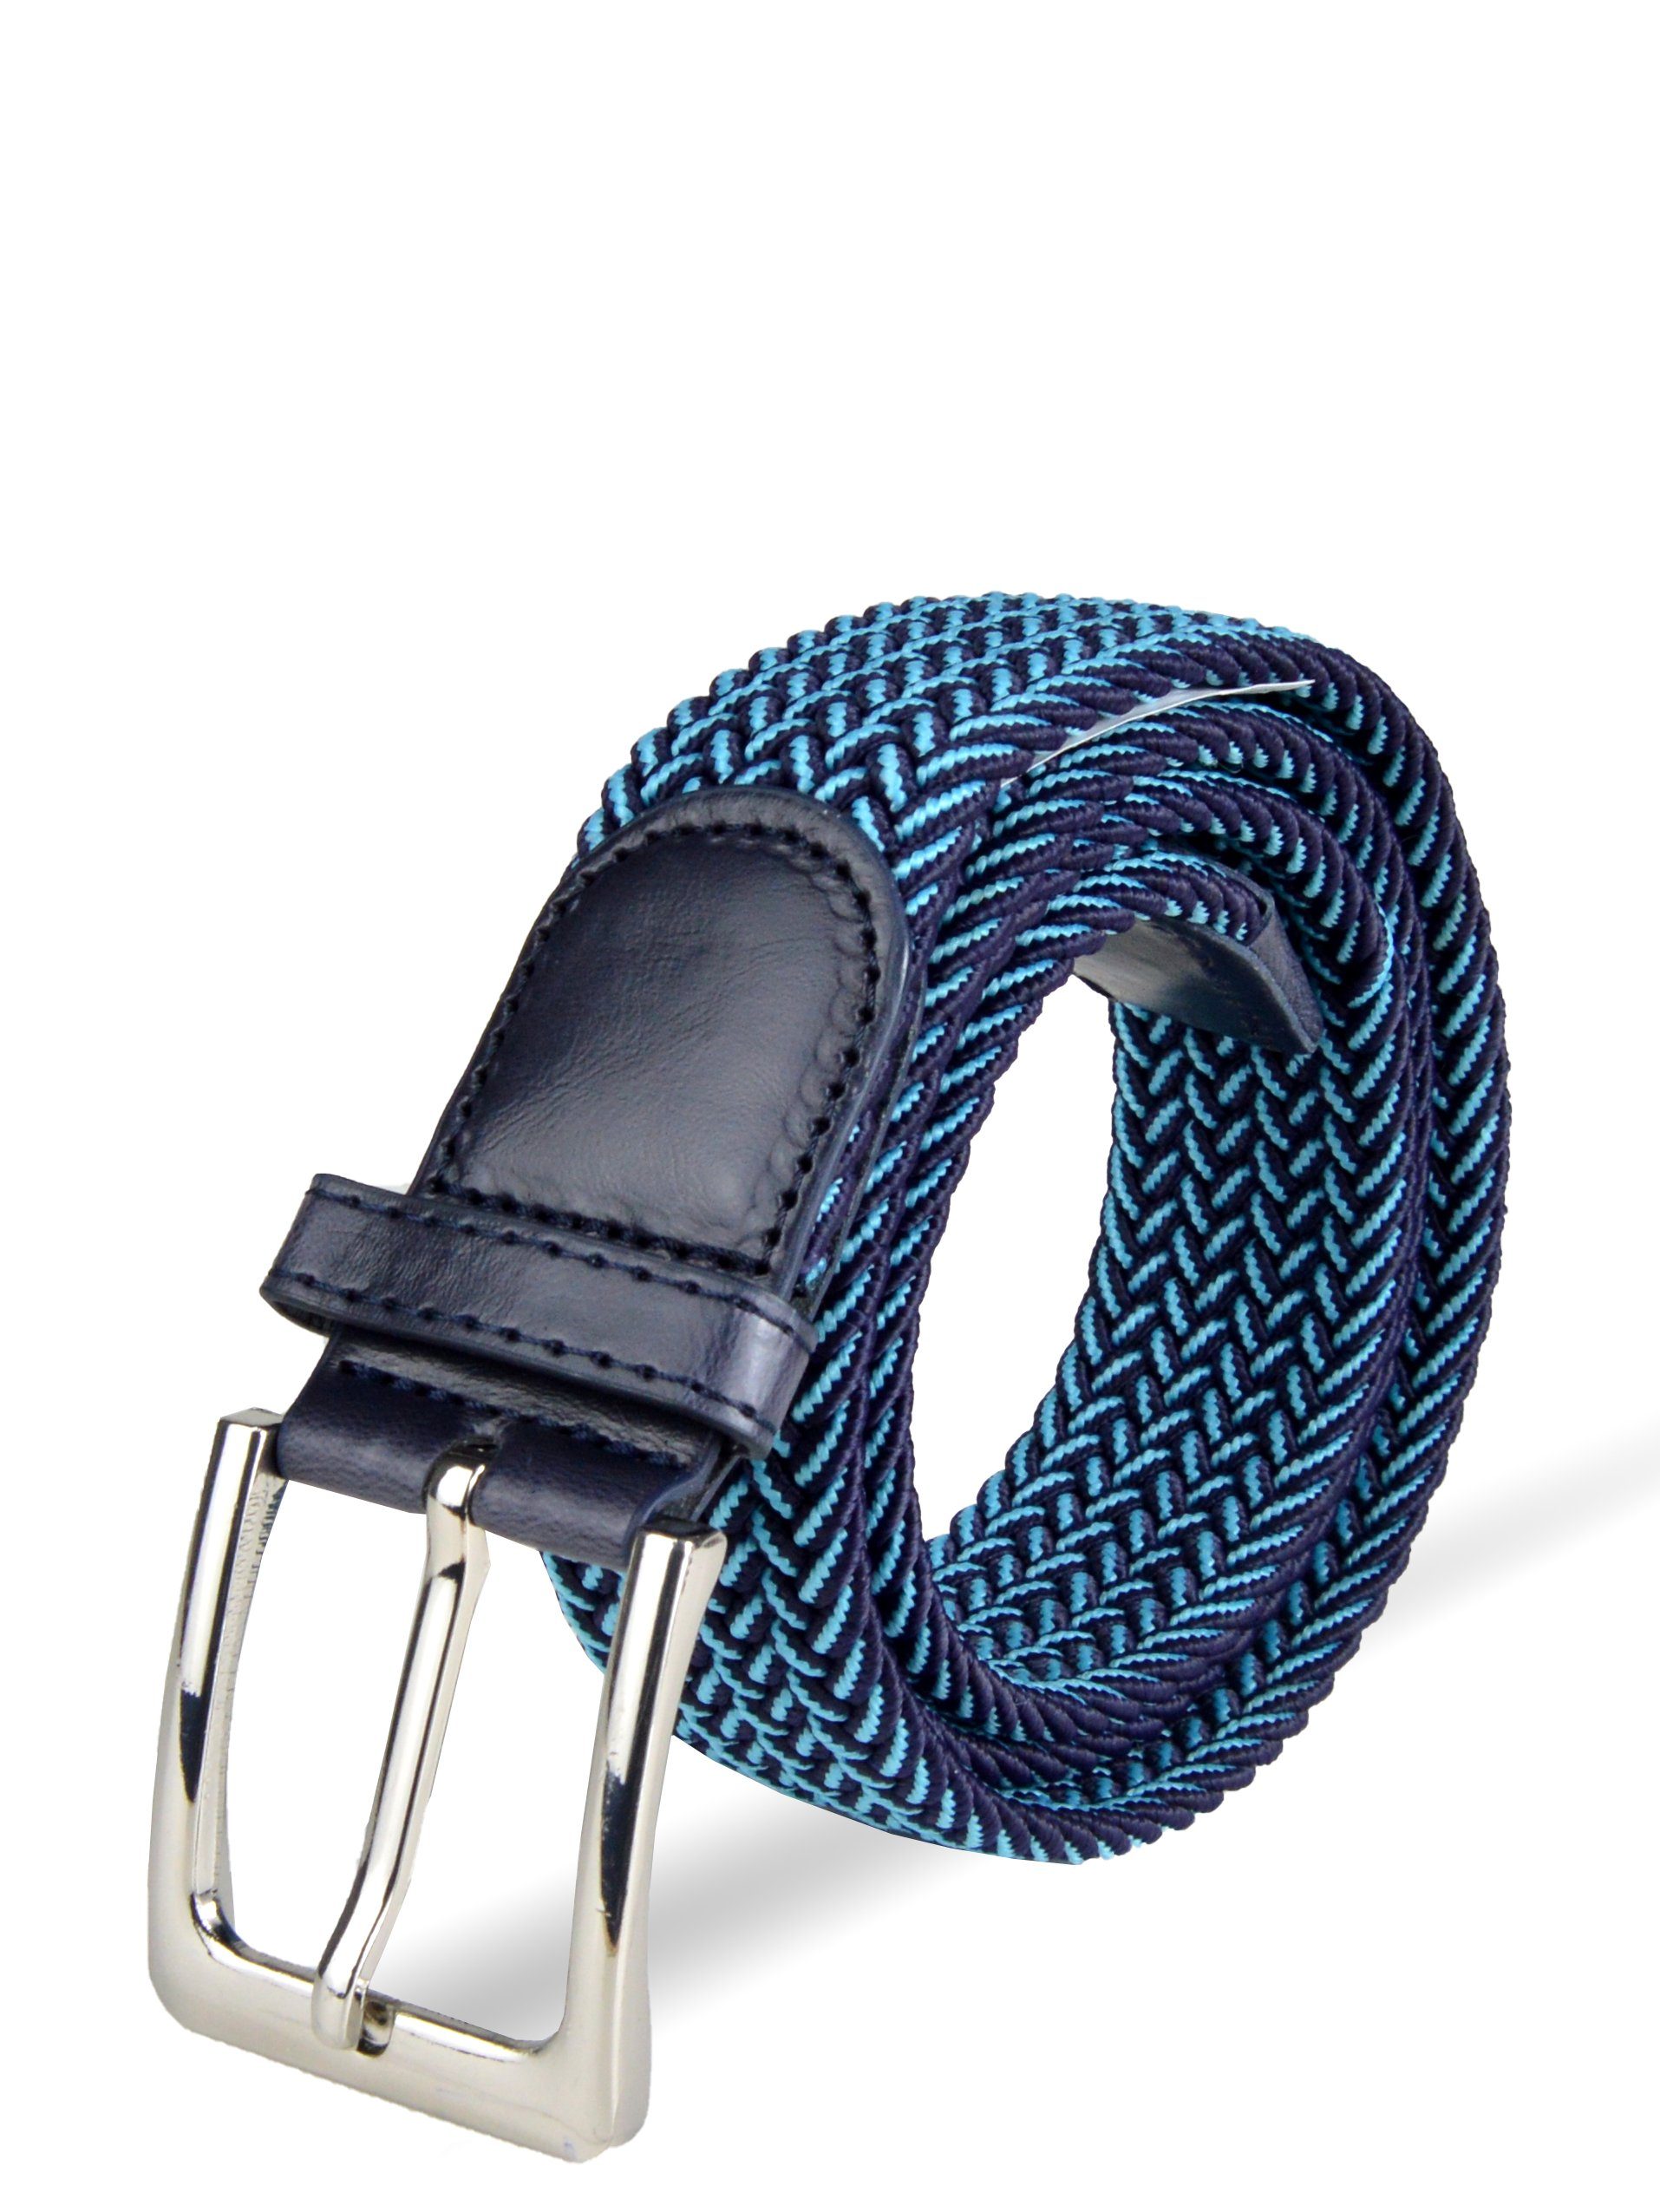 Socked Stoffgürtel Herren Stretchgürtel (105-150cm) stufenlos einstellbar, elastischer Flechtgürtel Blau-Hellblau